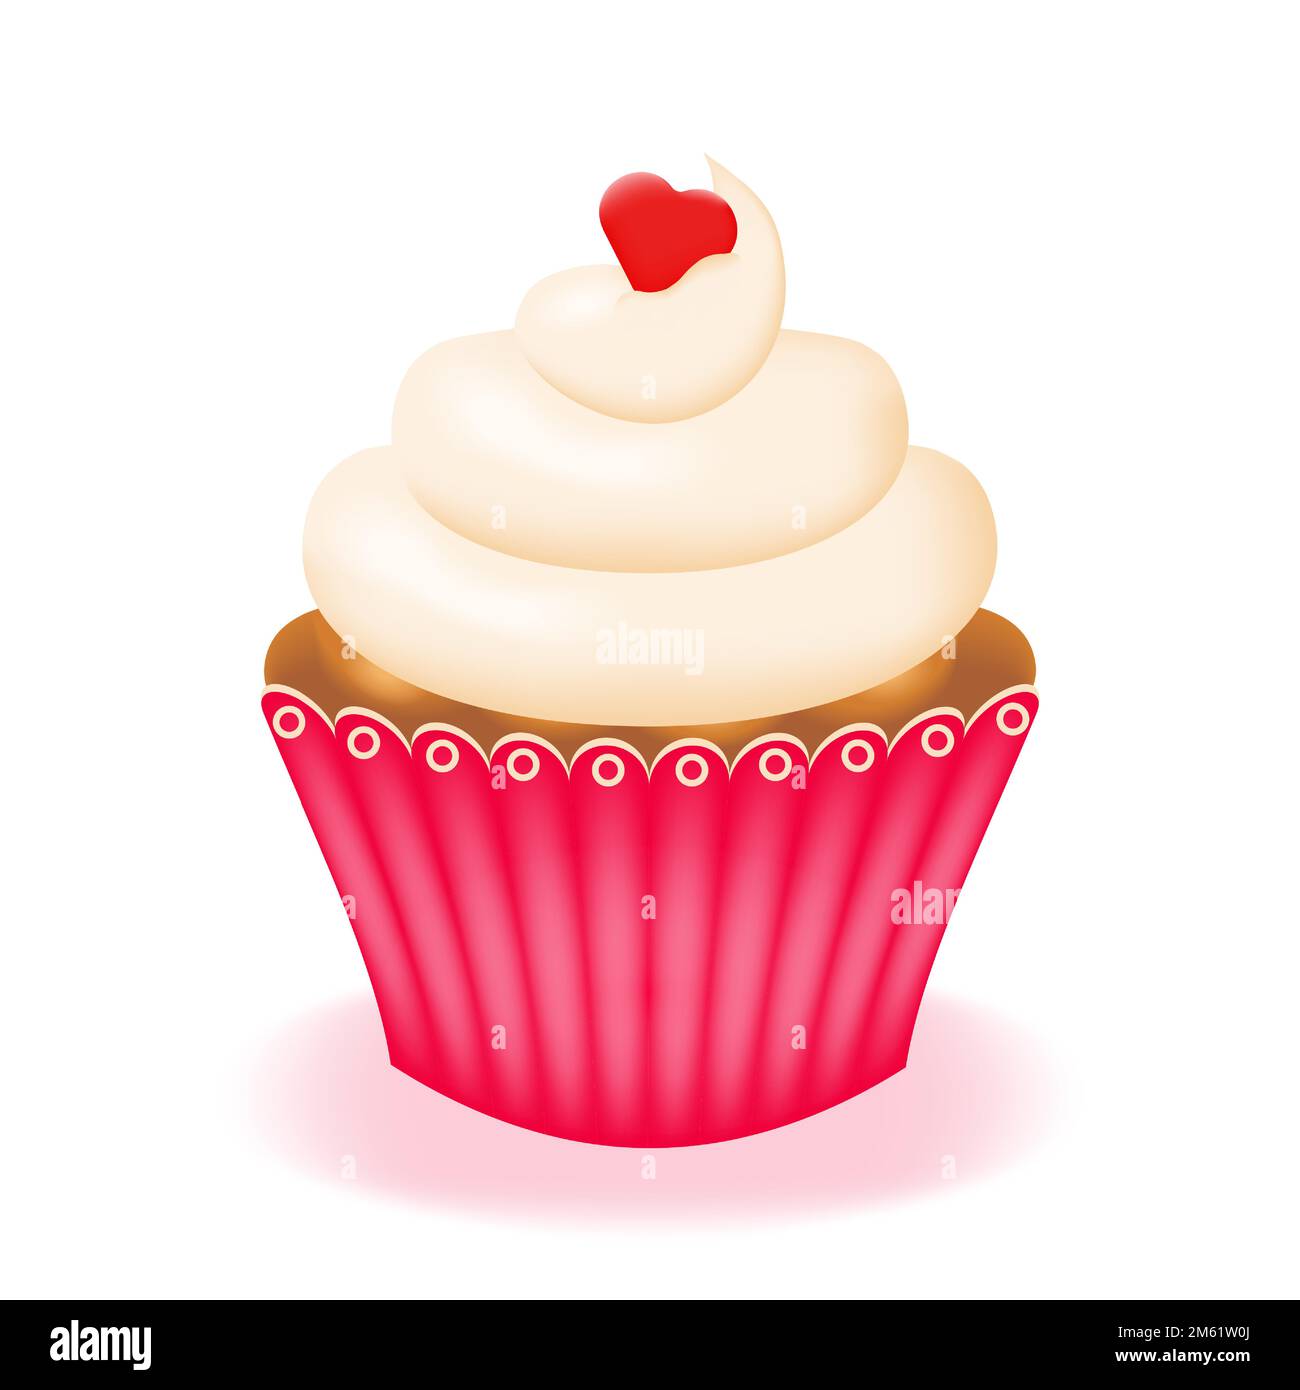 Cupcake, torta con crema in tazza di carta rosa isolato su sfondo bianco. Dolce con panna montata e cioccolato. Illustrazione vettoriale. Illustrazione Vettoriale